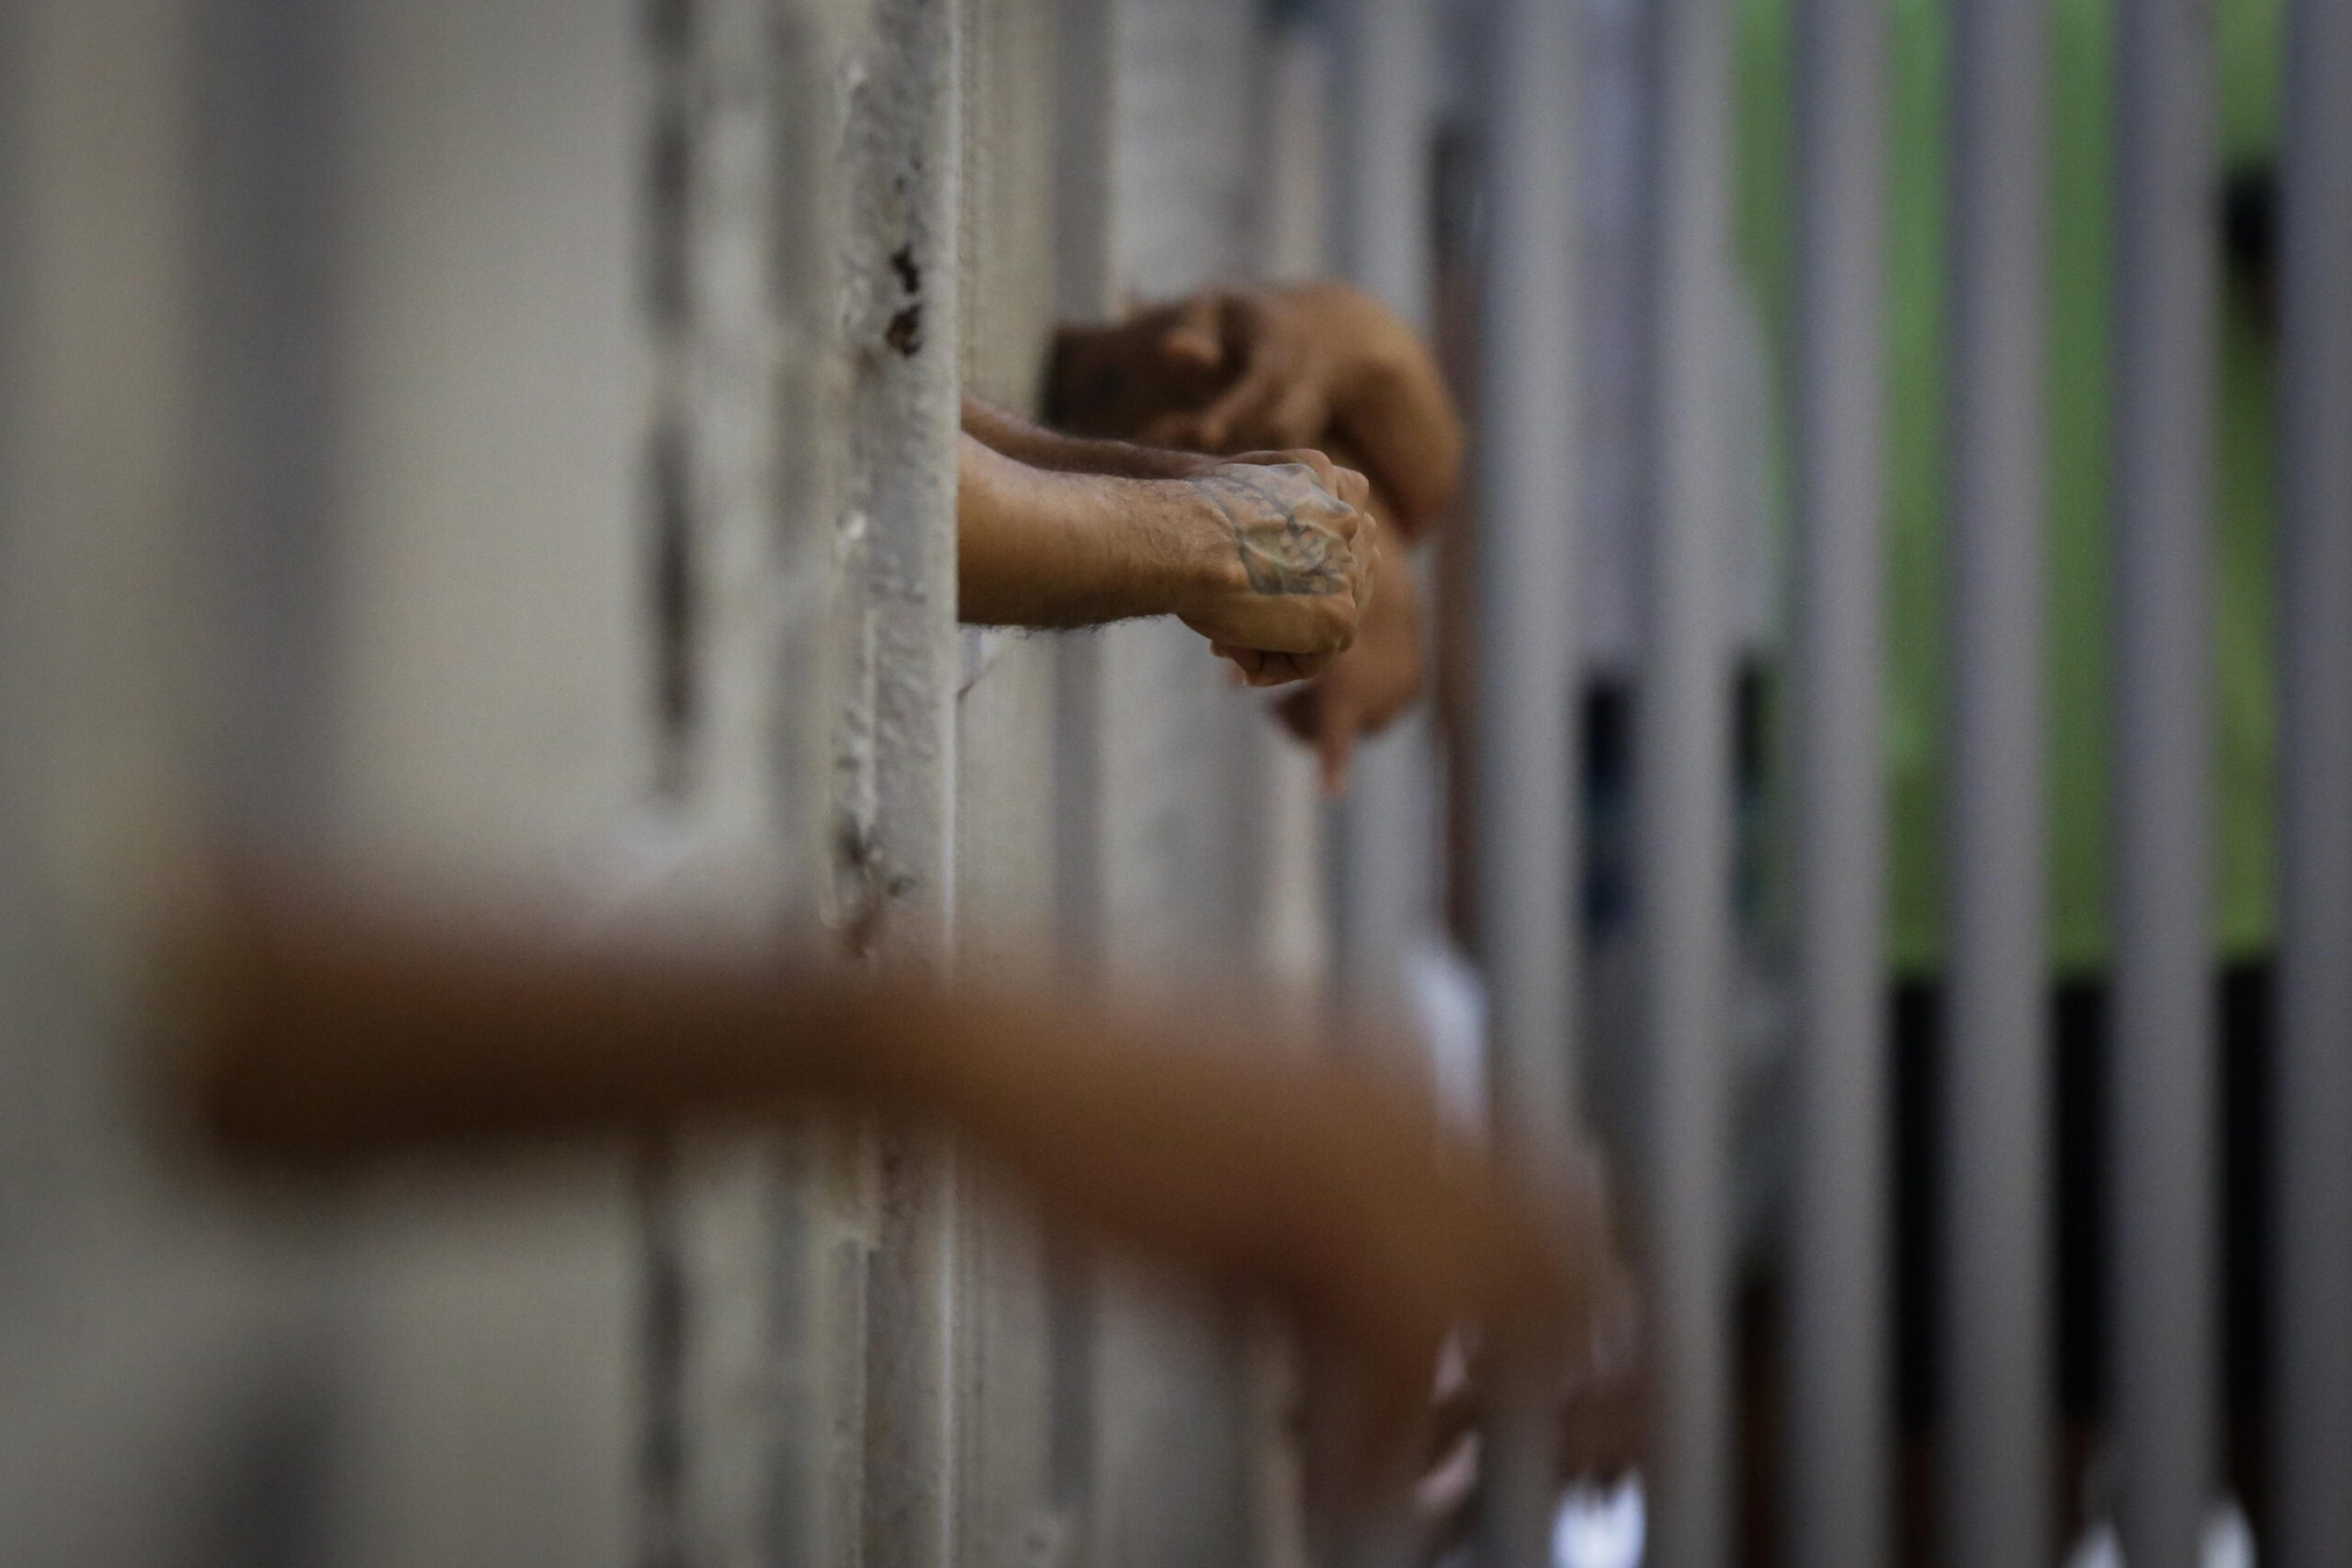 Incendio in una cella, detenuto muore intossicato: inutili i soccorsi